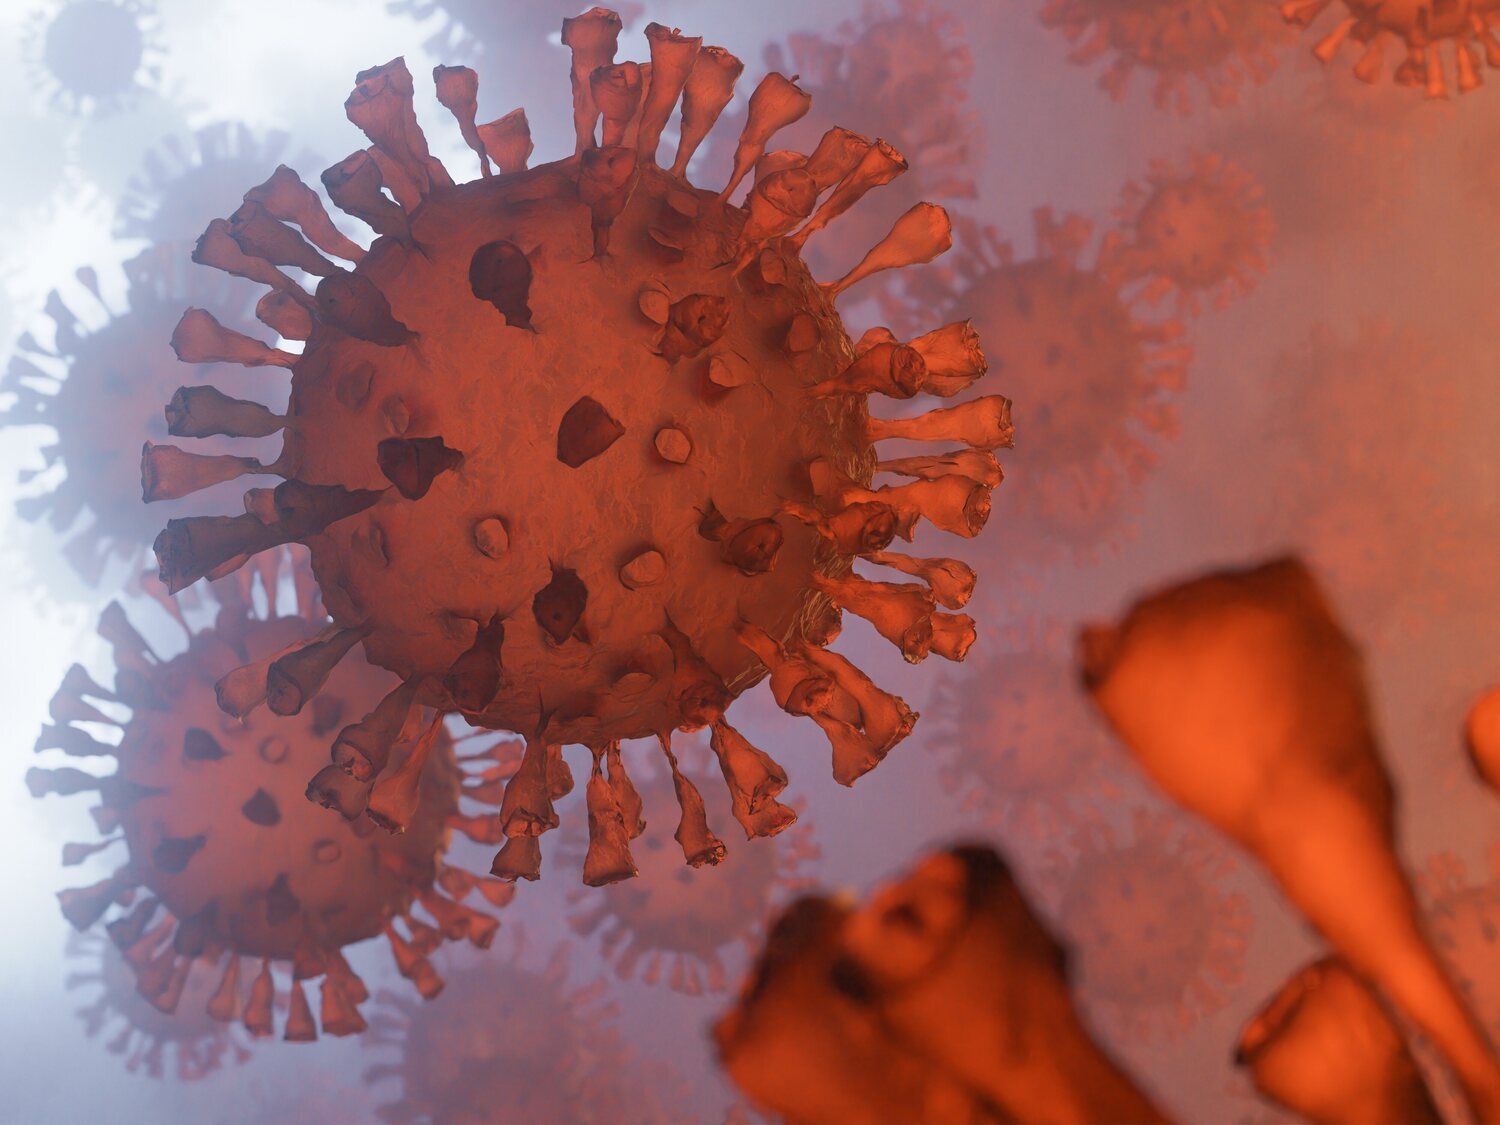 Alerta sanitaria ante la detección de Centaurus, la nueva subvariante de Ómicron: todo lo que implica